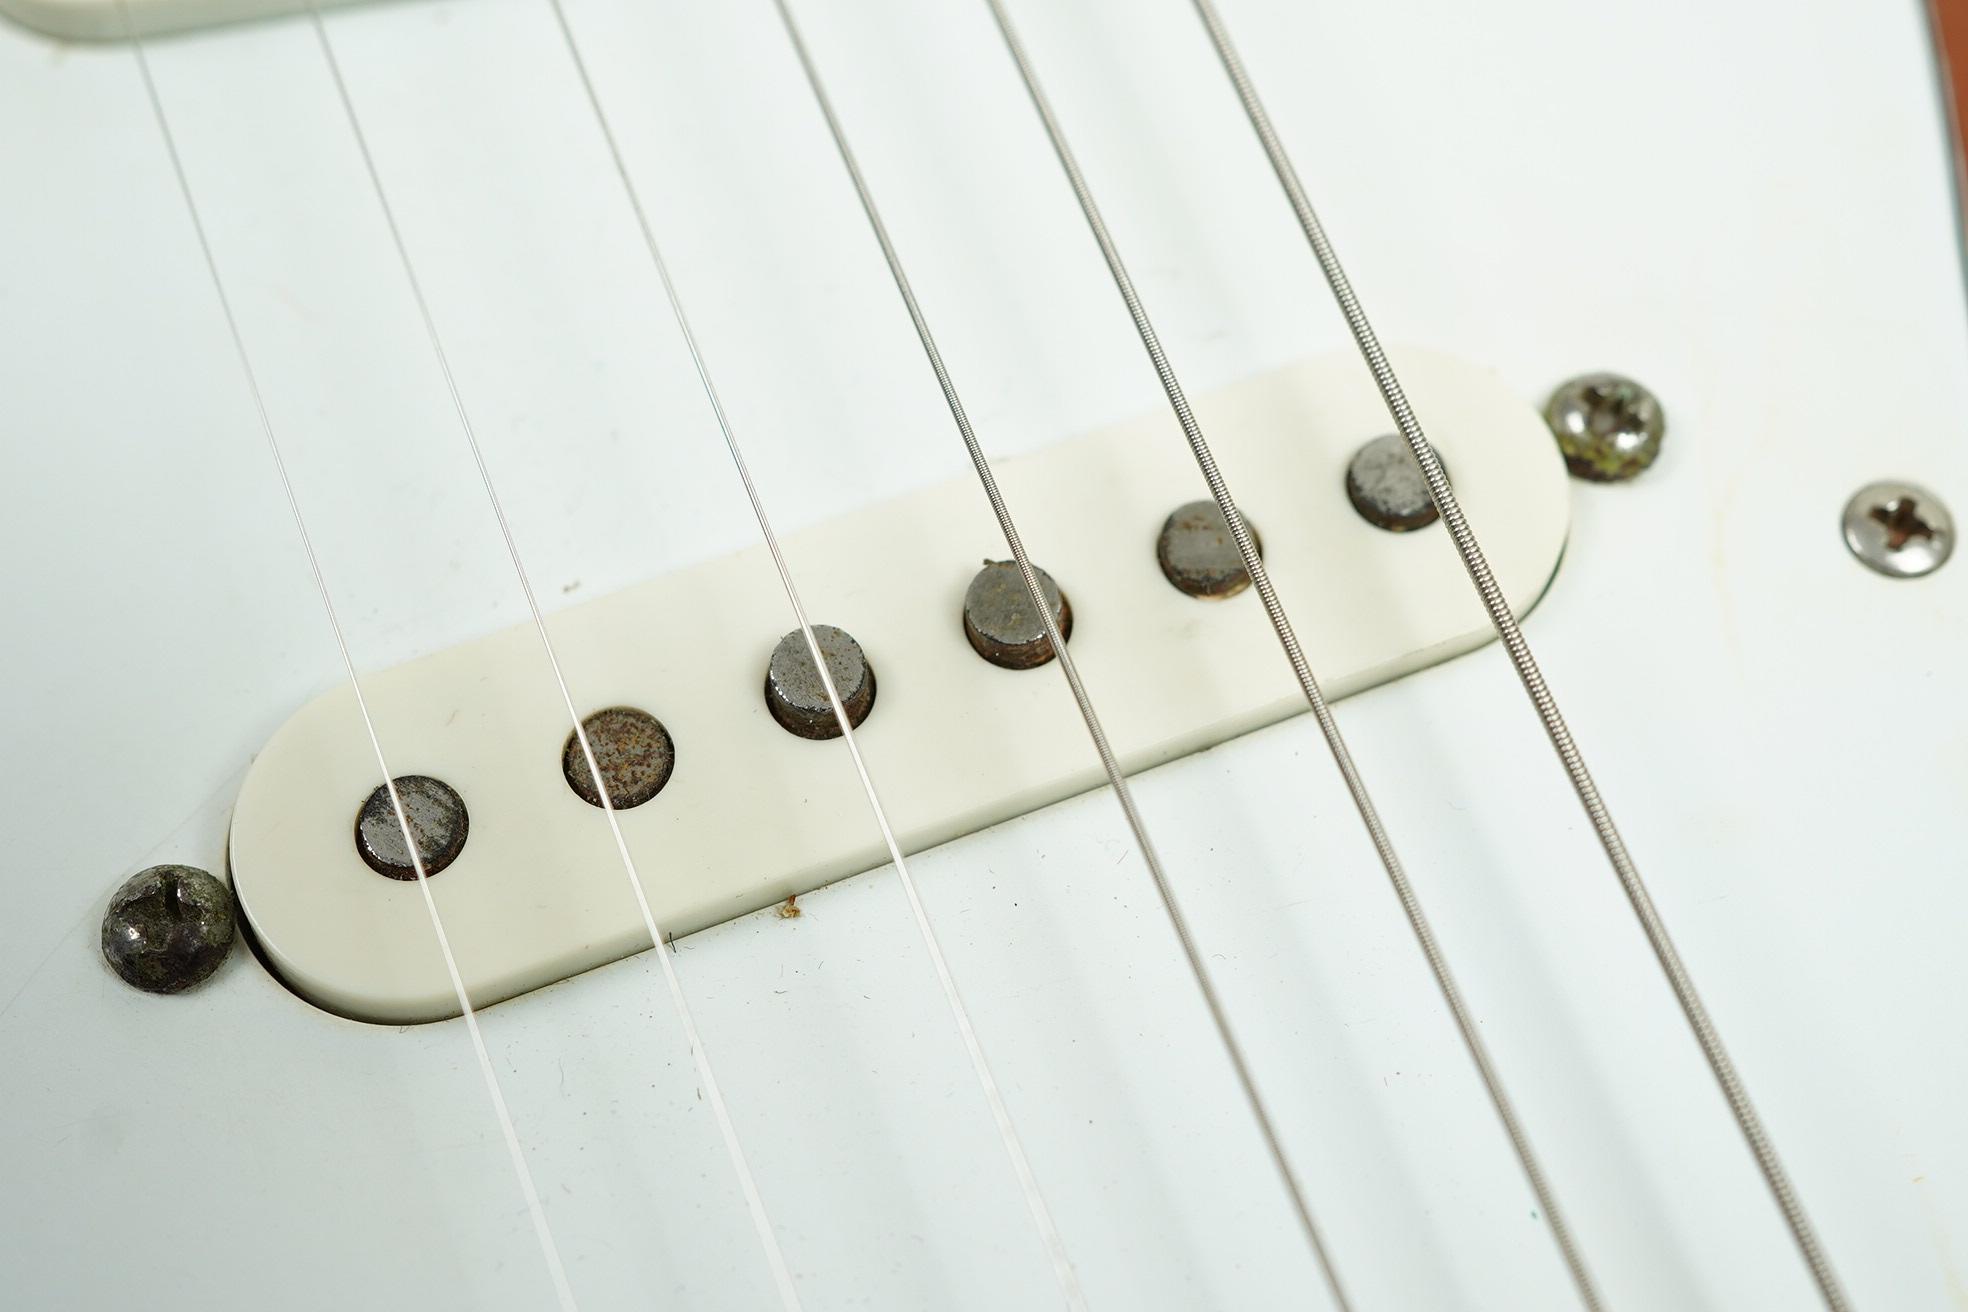 1974 Fender Stratocaster Hardtail Sunburst